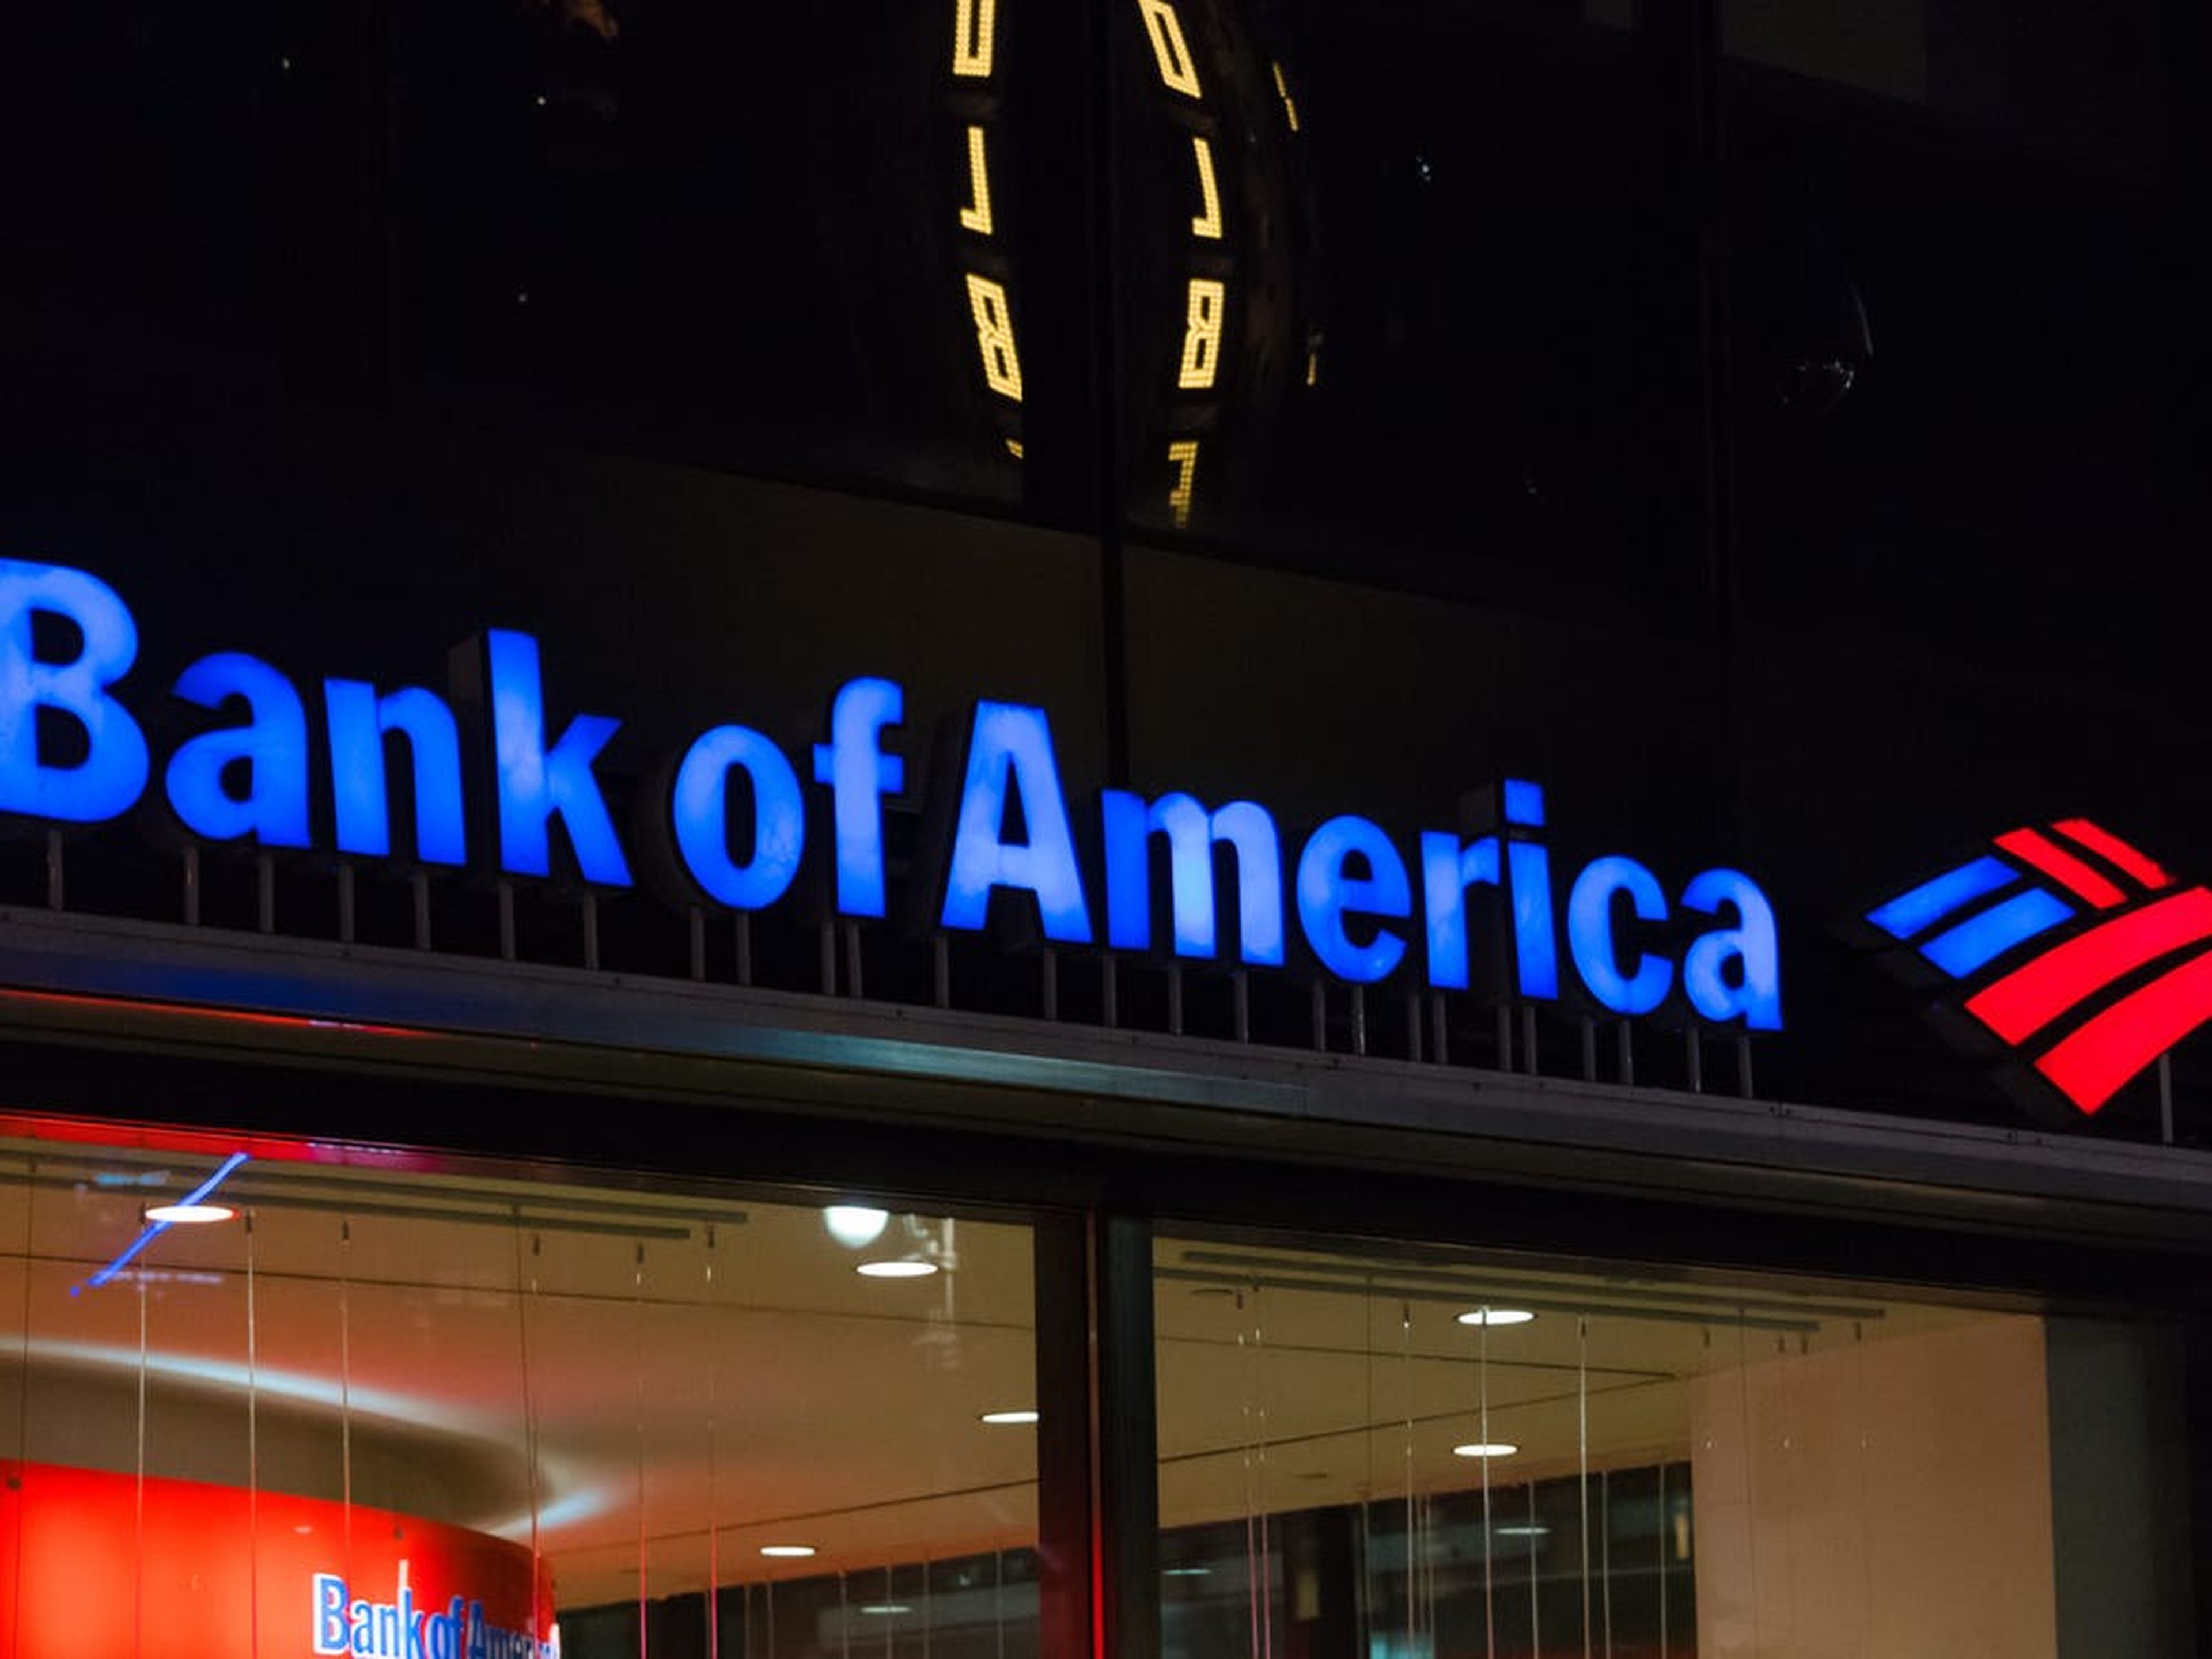 Vista nocturna del logotipo de la Torre Bank of America.